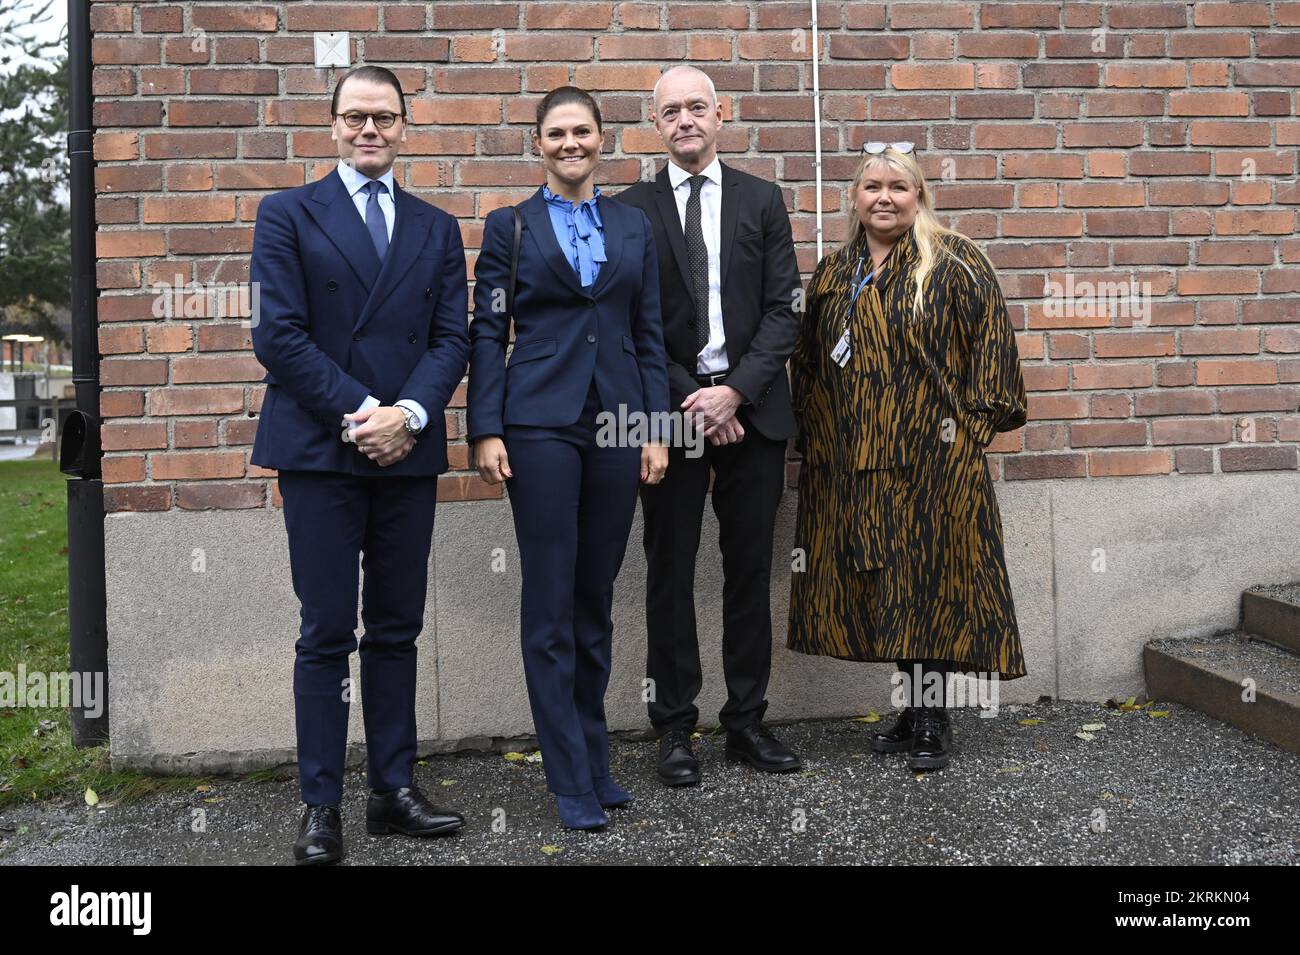 La Principessa Victoria e il Principe Daniel sono accolti da Lars Werkstrom, Direttore Generale, e dal medico capo Petra Rasten Almqvist all'arrivo al Foto Stock